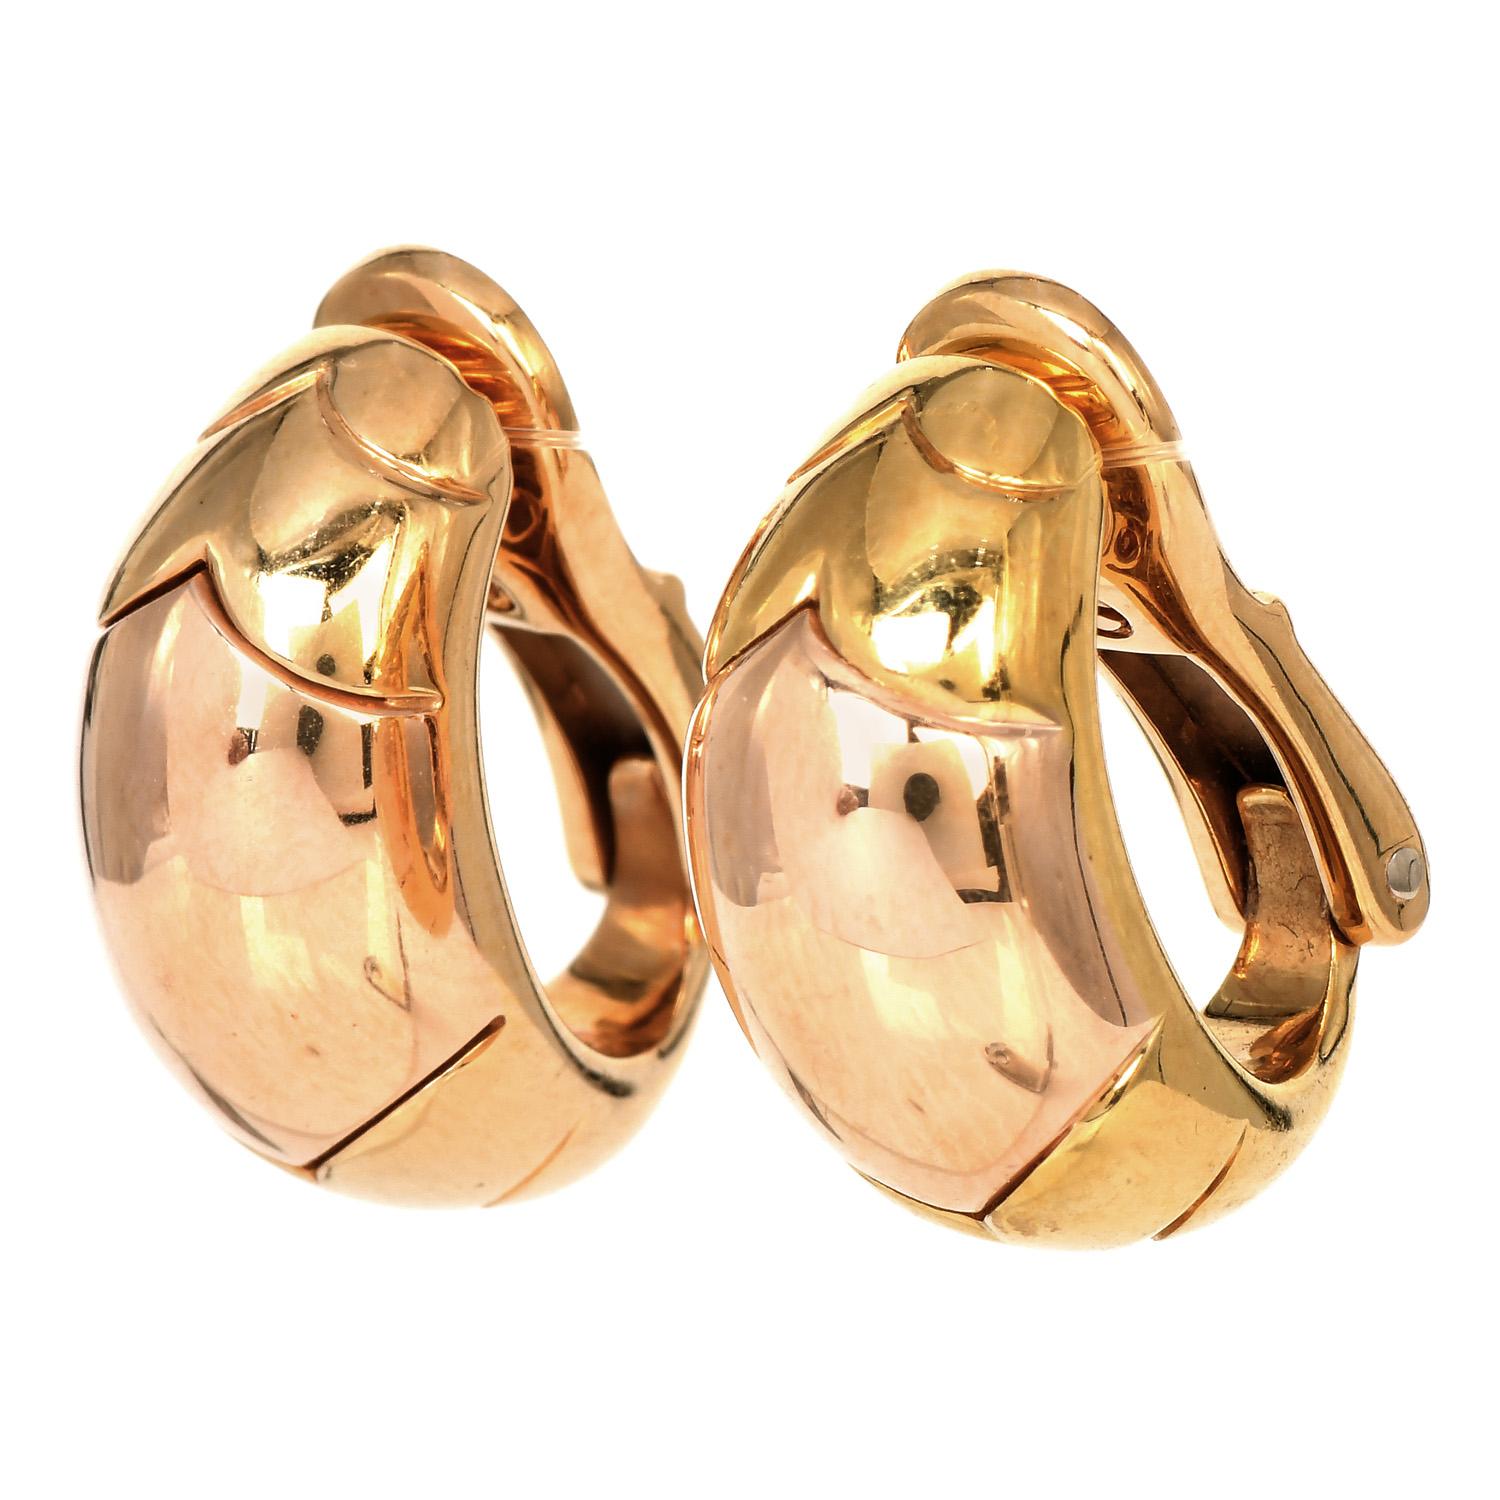 Klassischer Bvlgari Gold Hochglanzpolierter halber Creolenring,

Hergestellt aus massivem 18 Karat Gelb- und Roségold.

Sie messen ca. 20 mm x 10 mm und wiegen 16,0 Gramm. Die Ohrringe haben einen Omega-Clip-Verschluss, der speziell für nicht